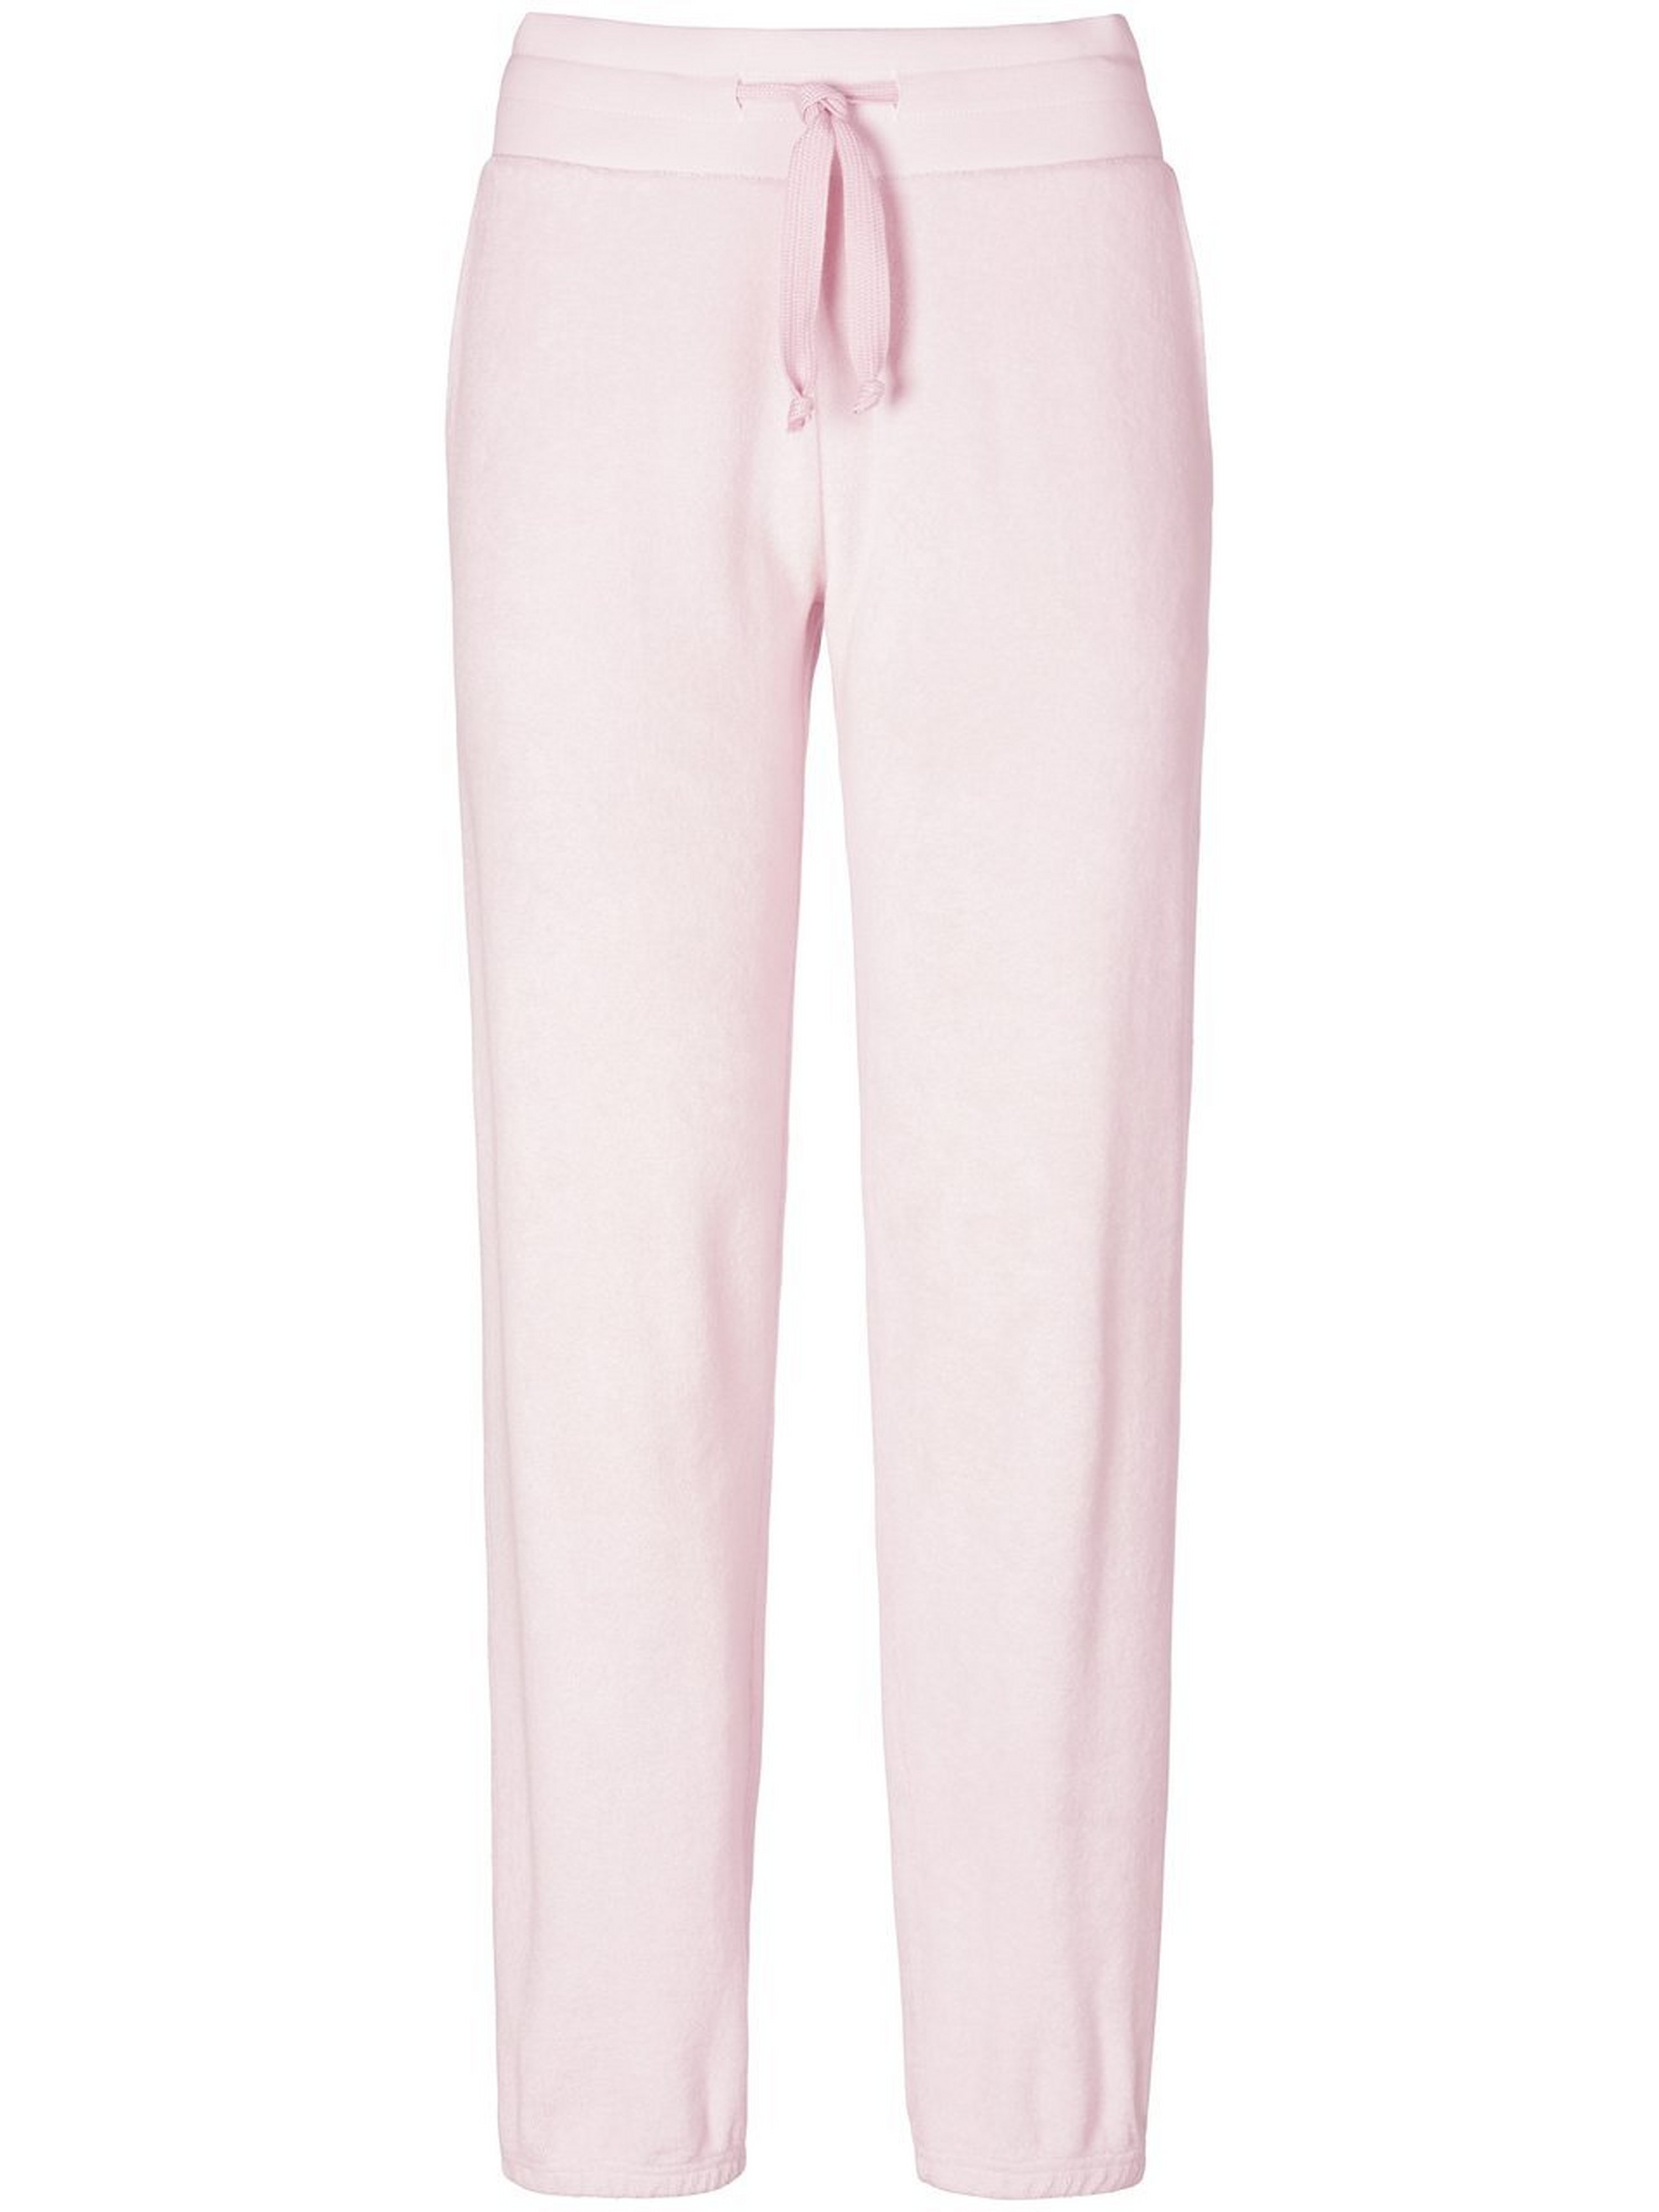 Le pantalon longueur chevilles 100% coton  Juvia rosé taille 46